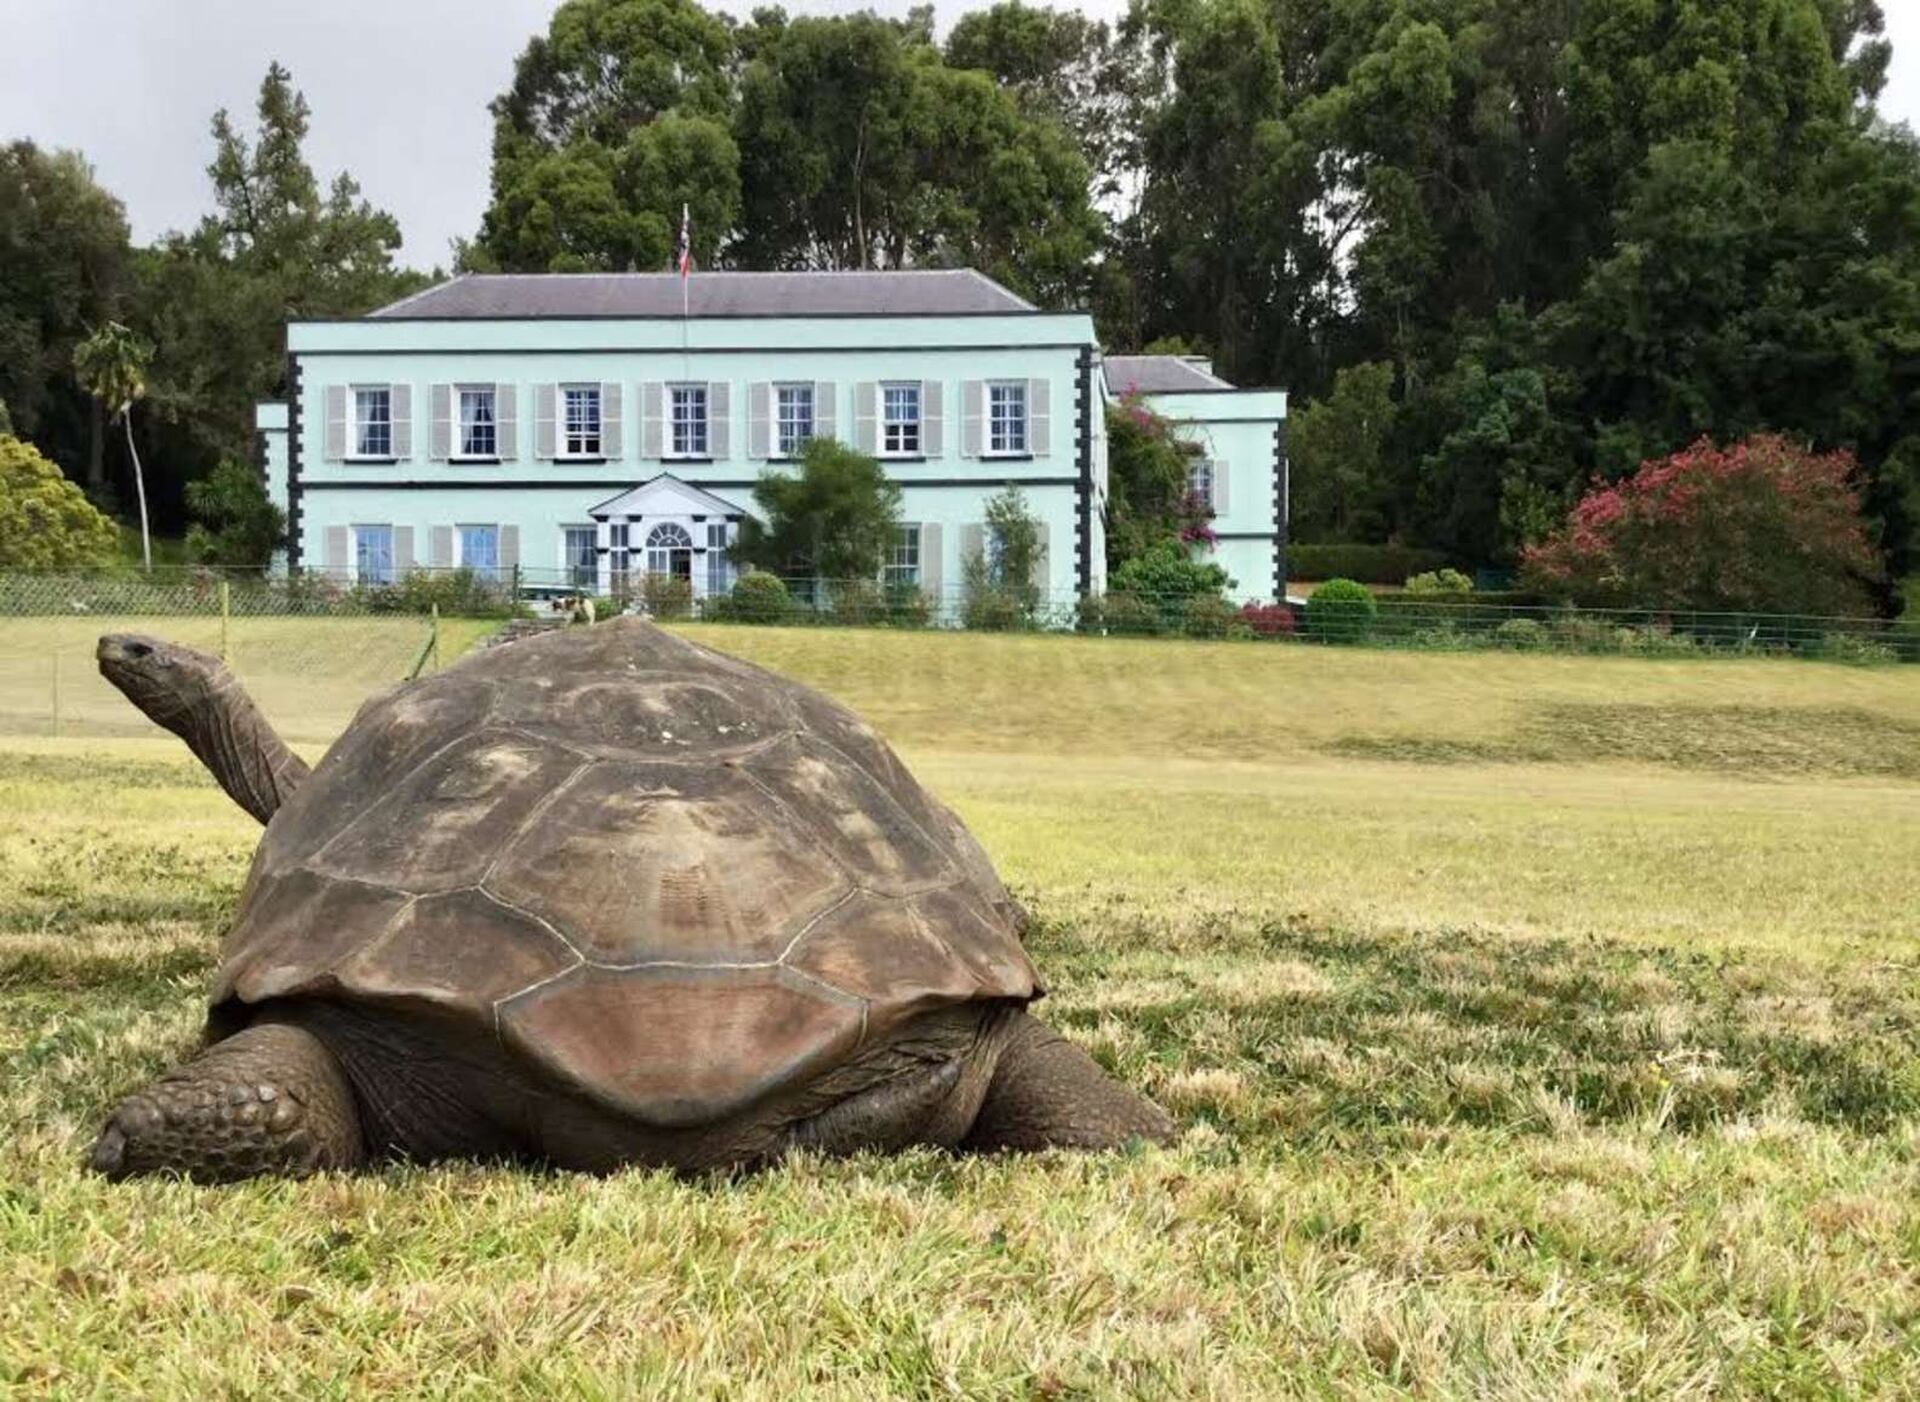 Jonathan es una tortuga gigante de Seychelles (Aldabrachelys gigantea hololissa), una especie que se creía extinta en su hábitat original.